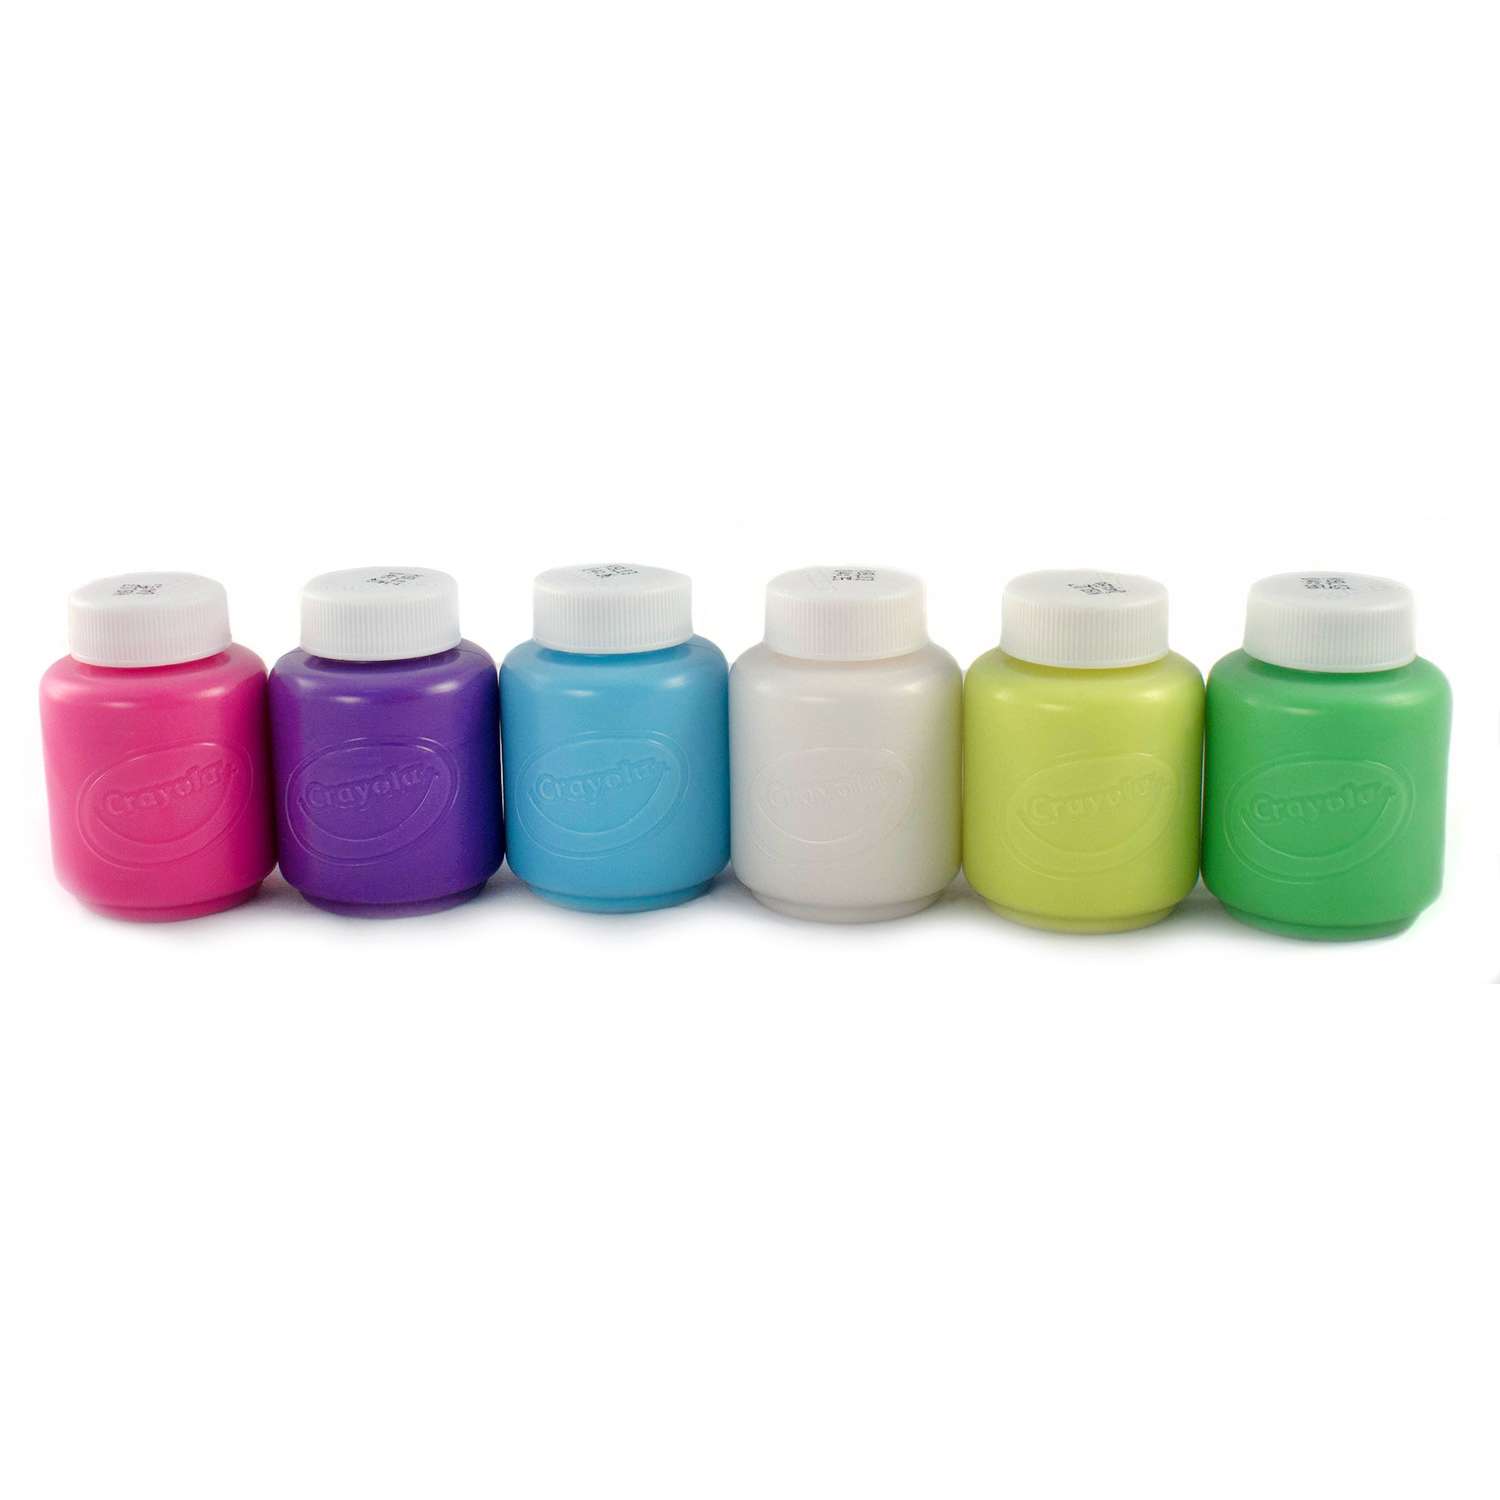 Краски Crayola неоновые 6 цветов 54-2391 - фото 6